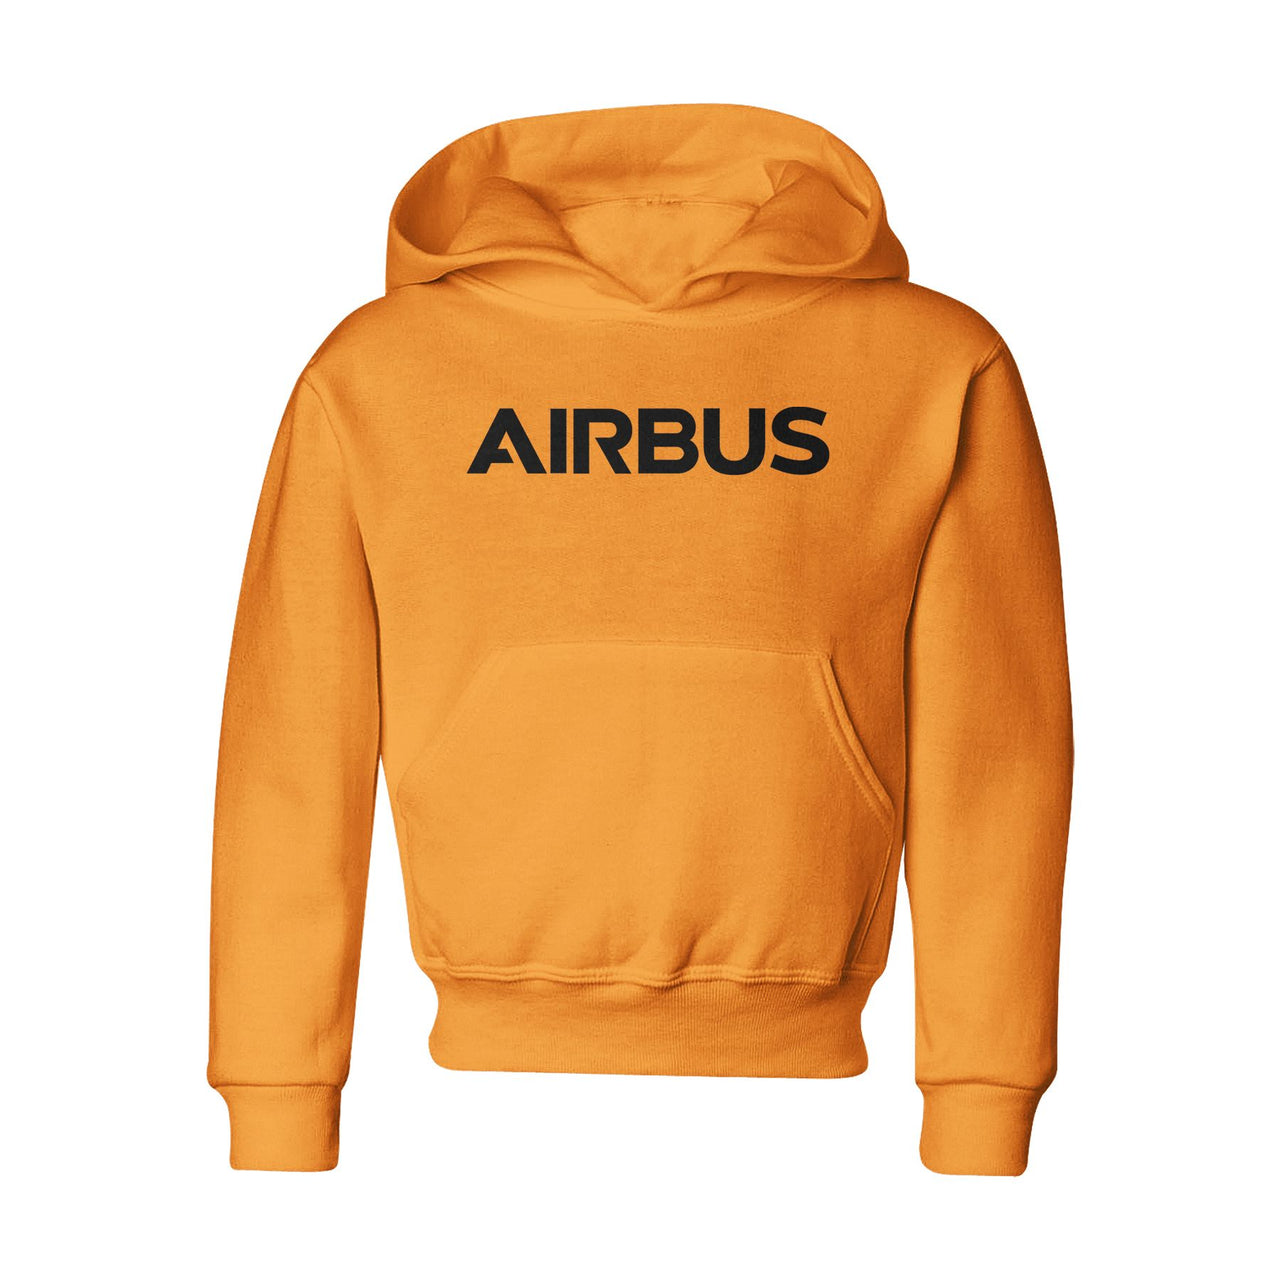 Airbus & Text Designed "CHILDREN" Hoodies